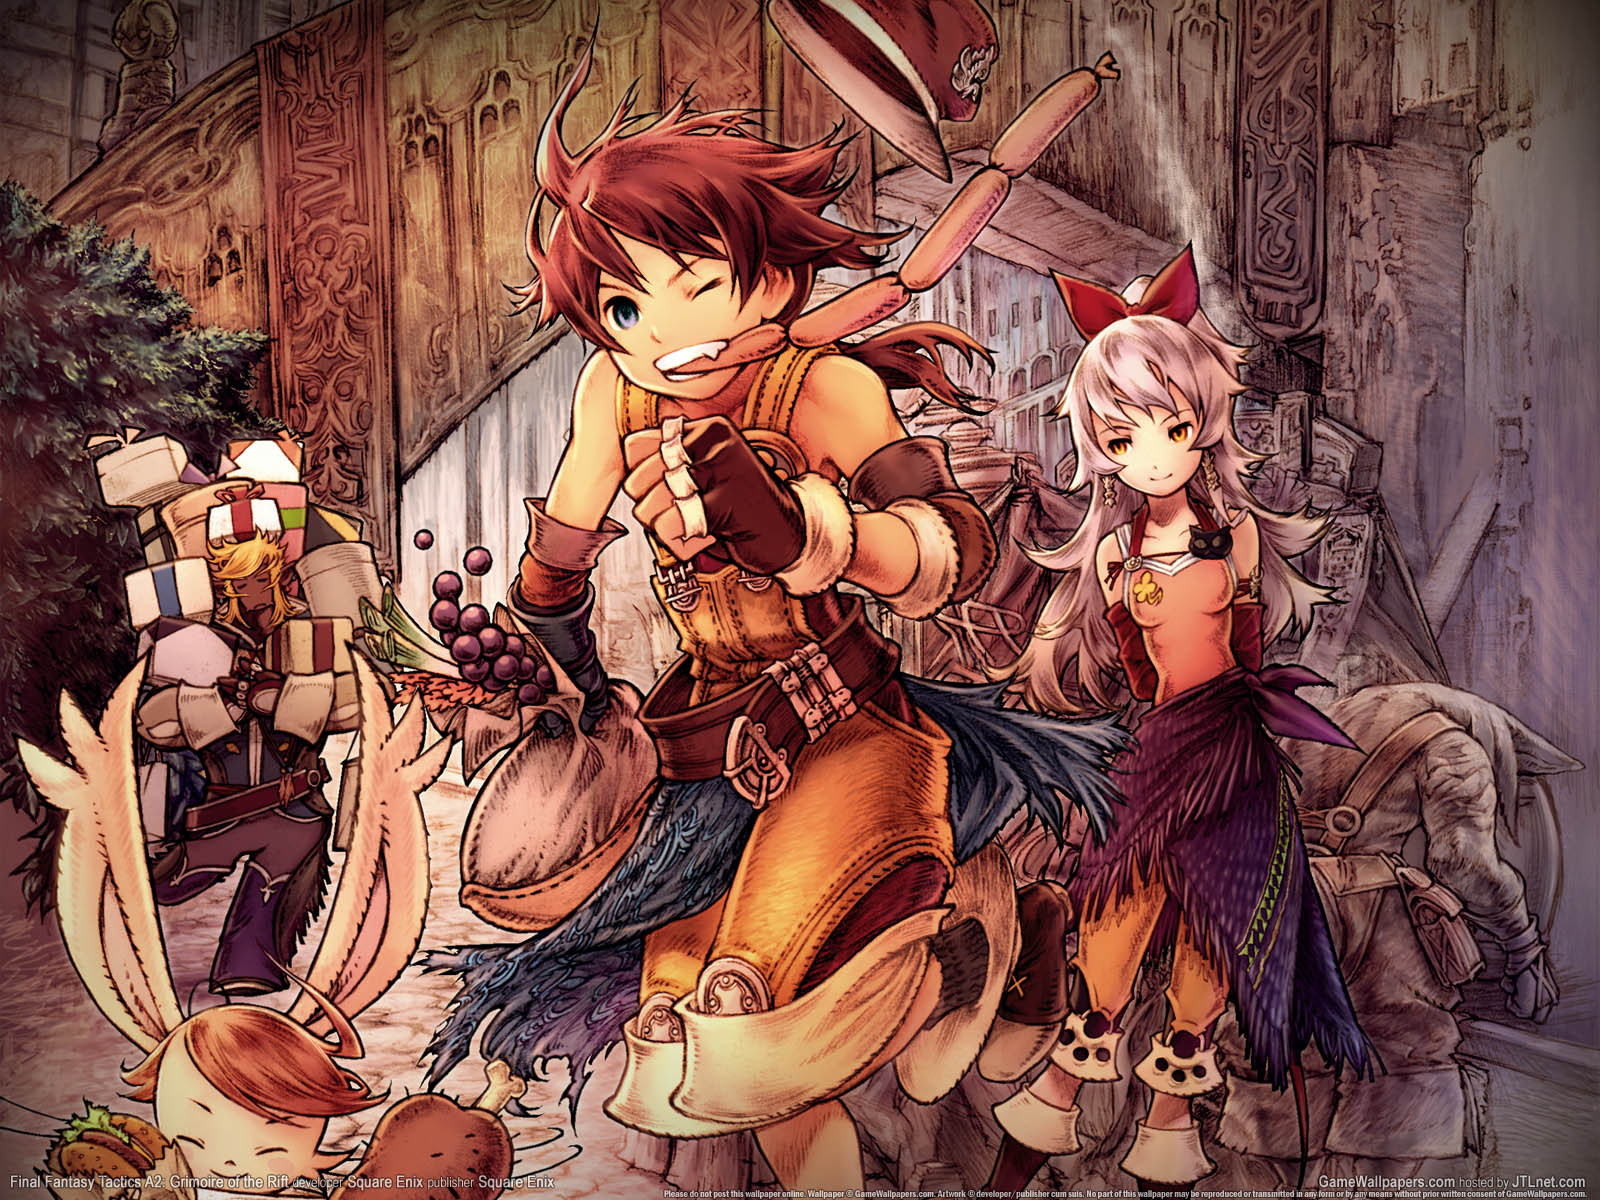 Final Fantasy Tactics A2%3A Grimoire of the Rift wallpaper 02 1600x1200